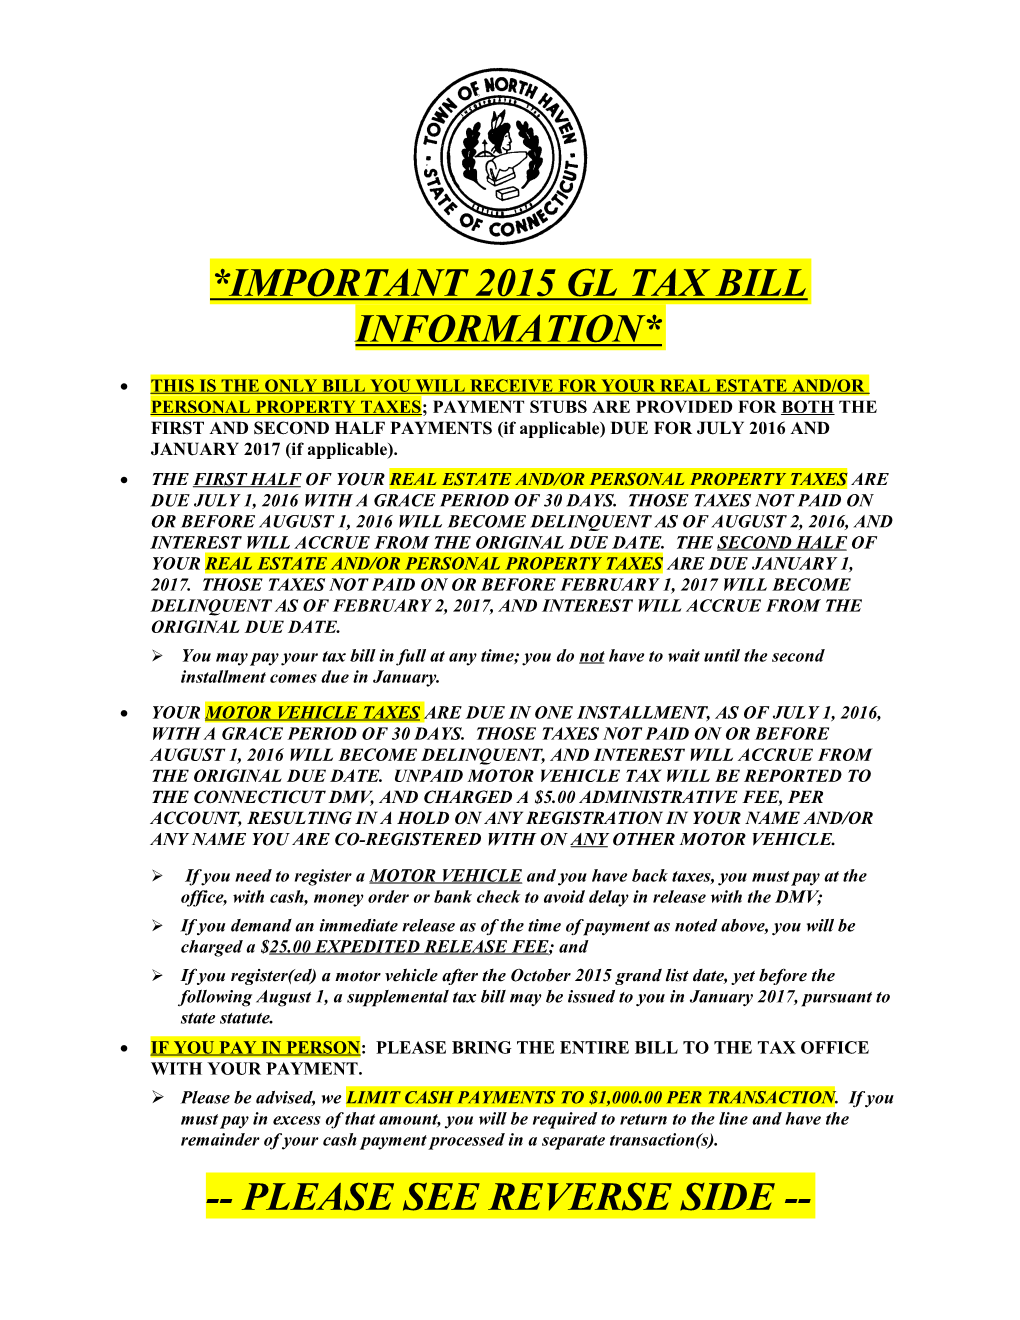 *Important2015 Gl Tax Bill Information*